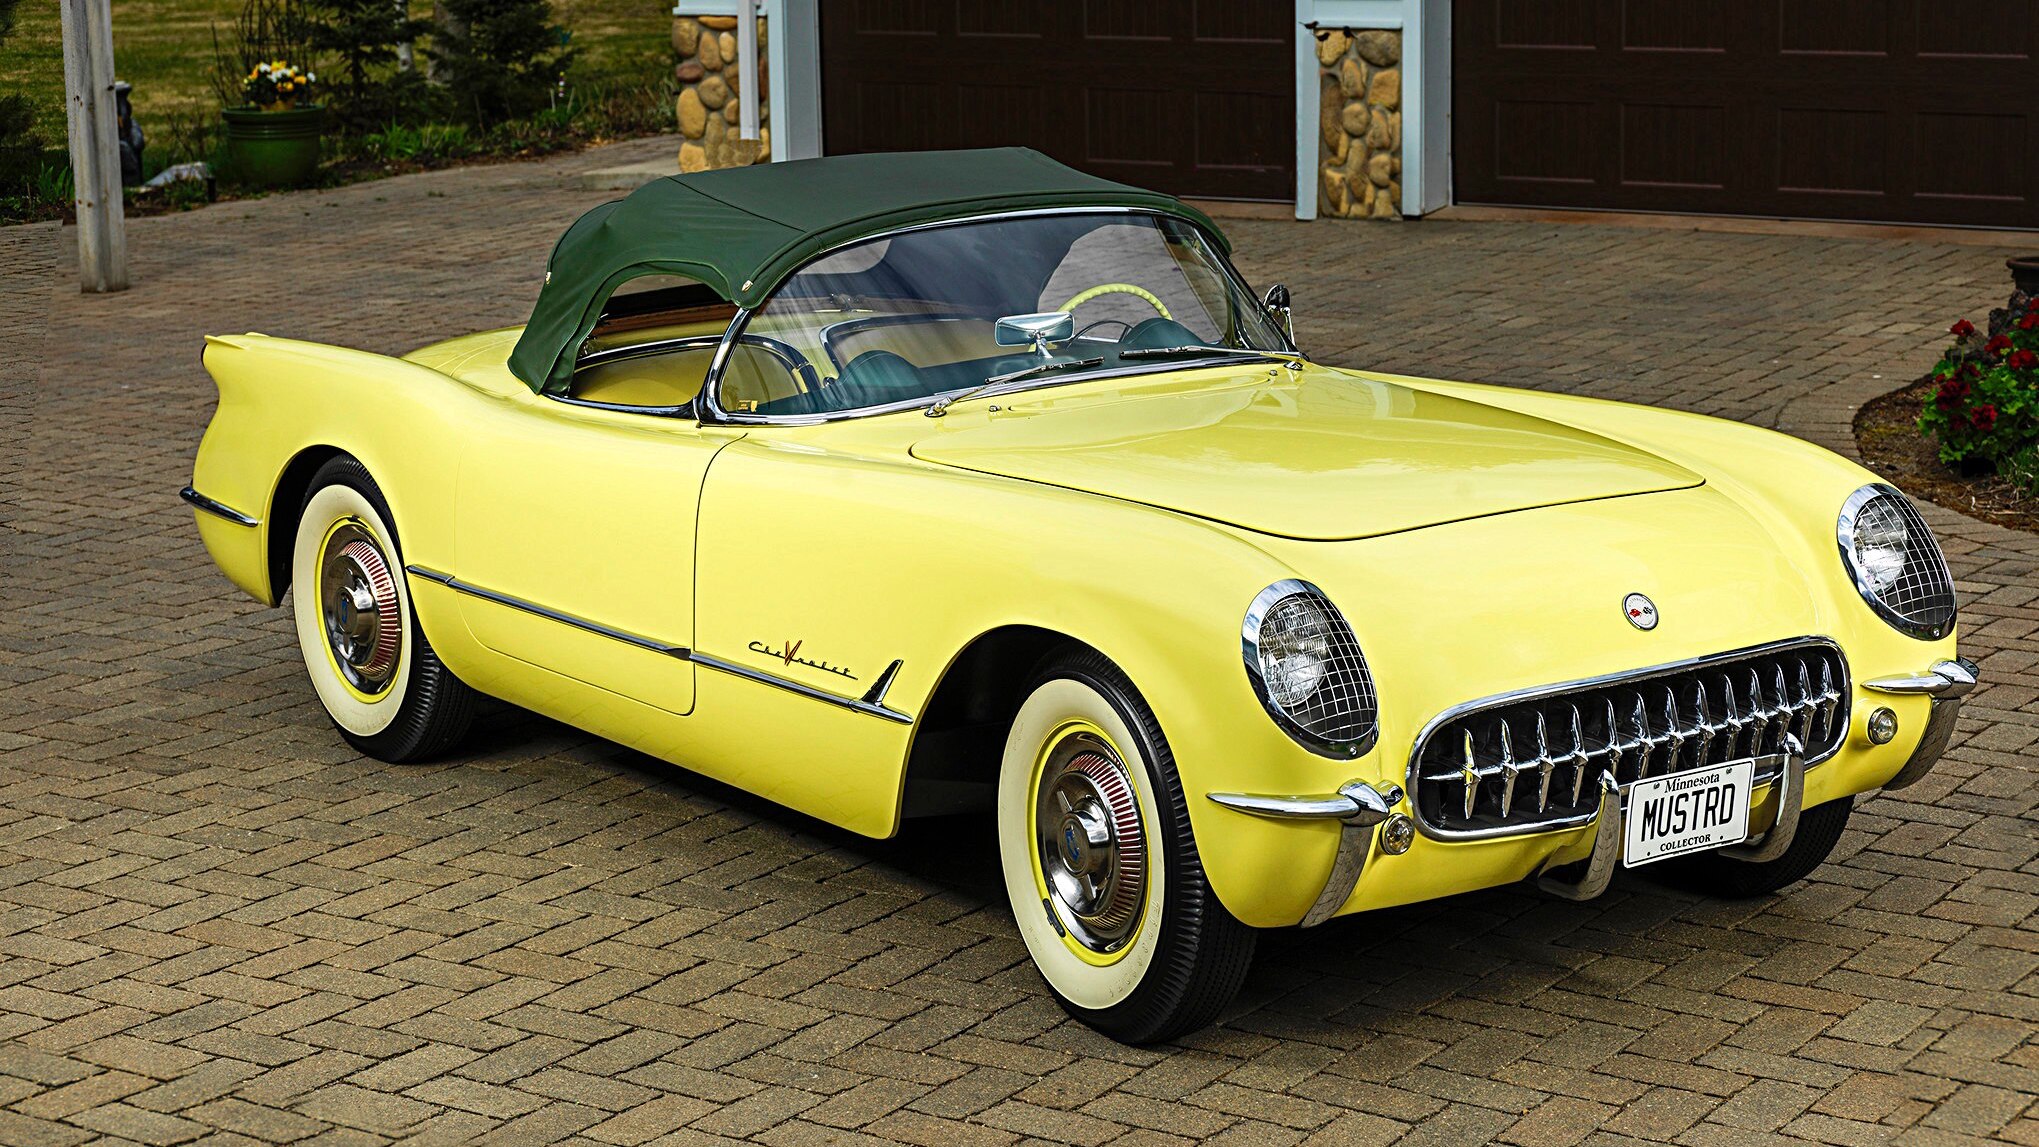 1955 corvette